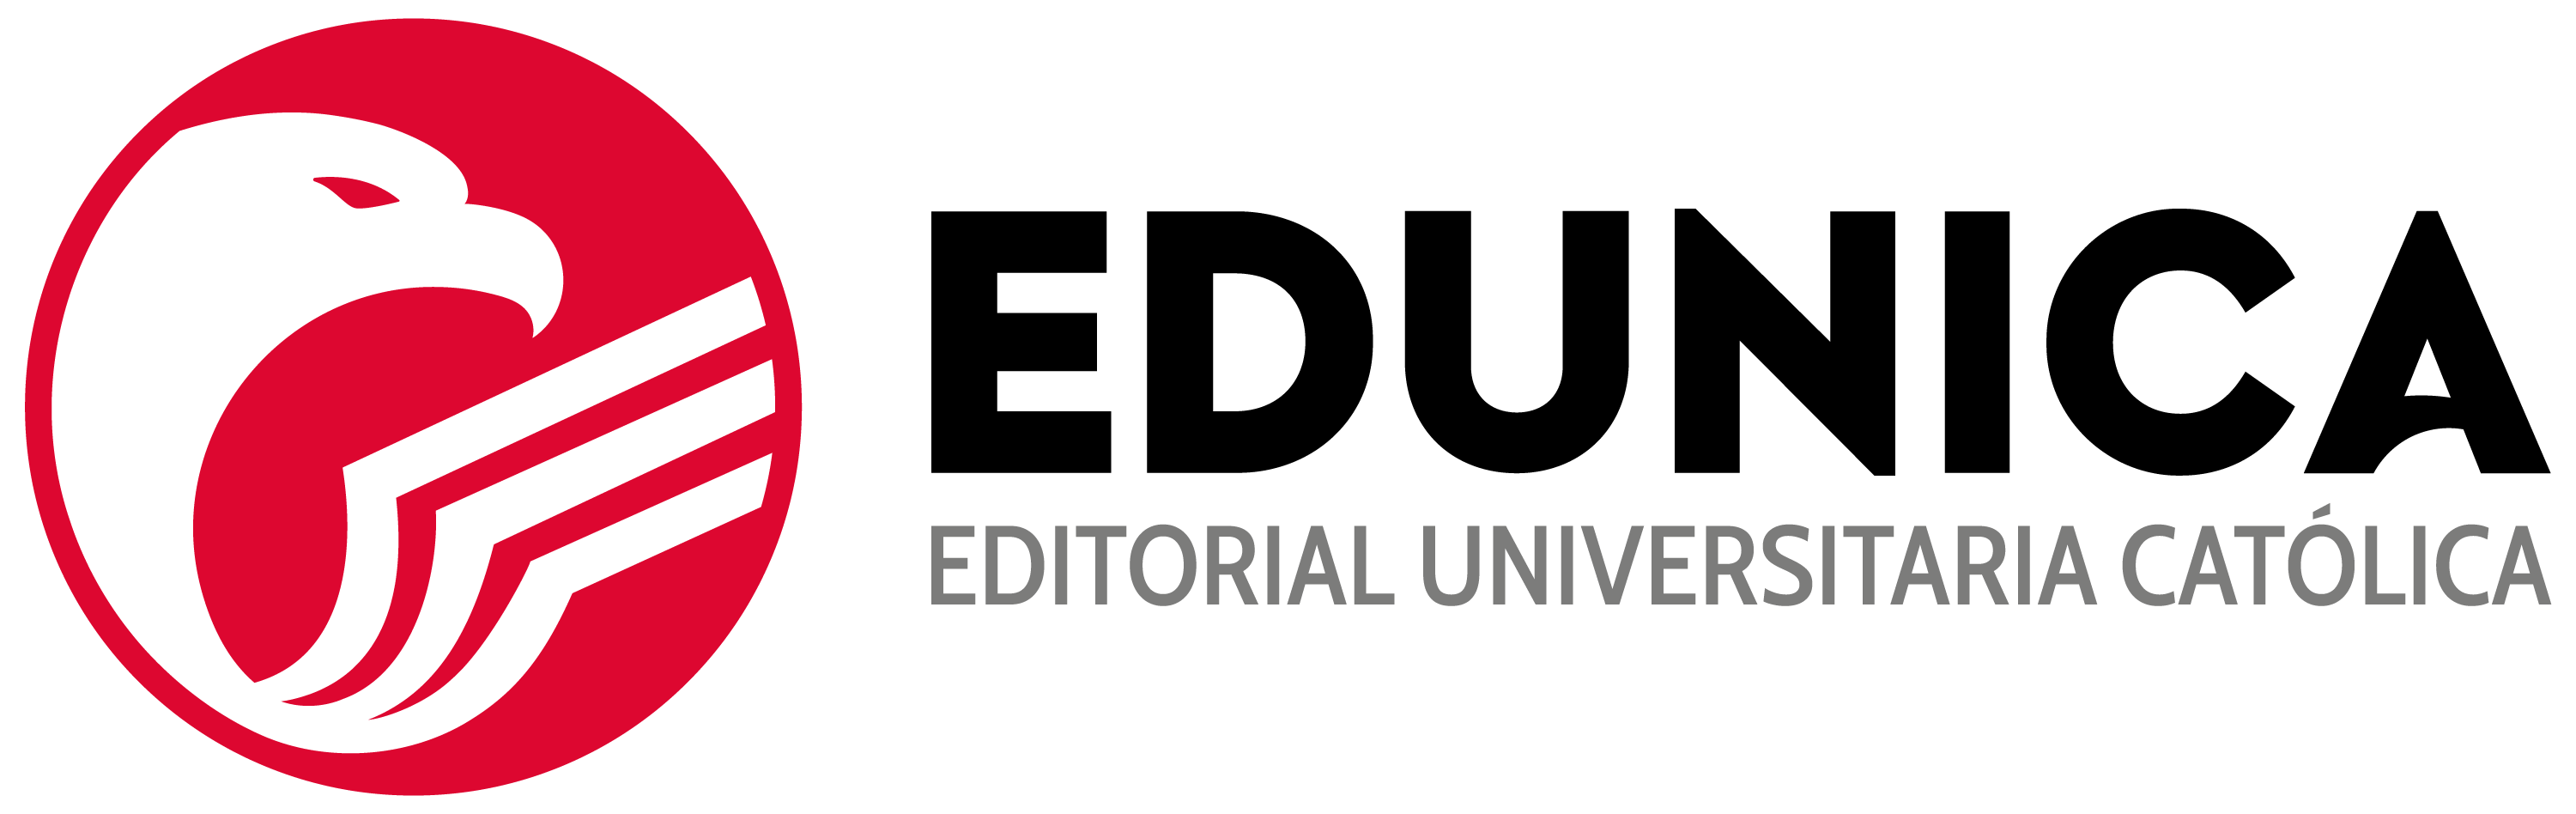 Editorial Universitaria Católica